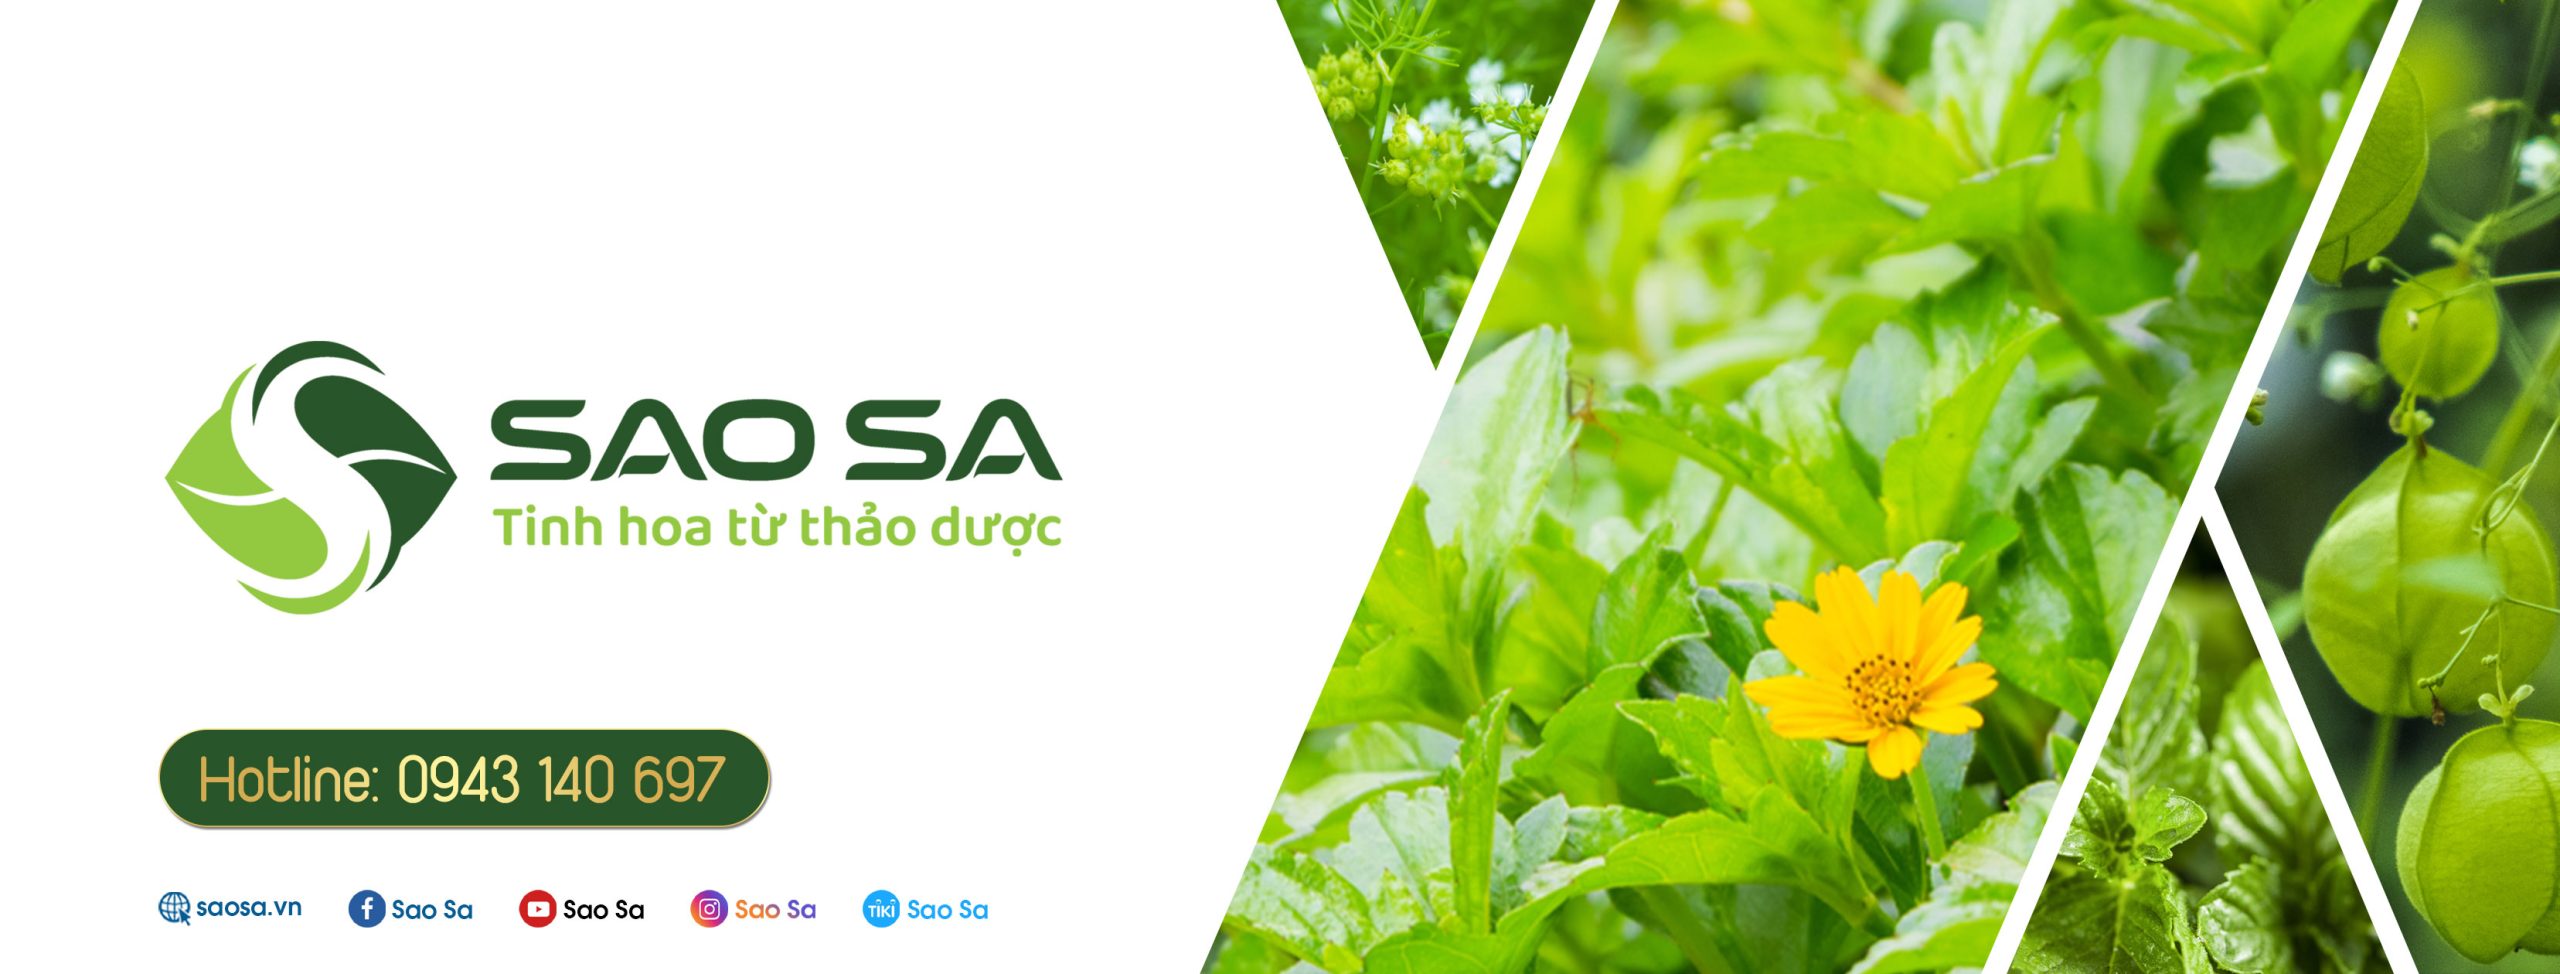 SaoSa cung cấp các loại xà bông thảo dược được nhiều người tin dùng